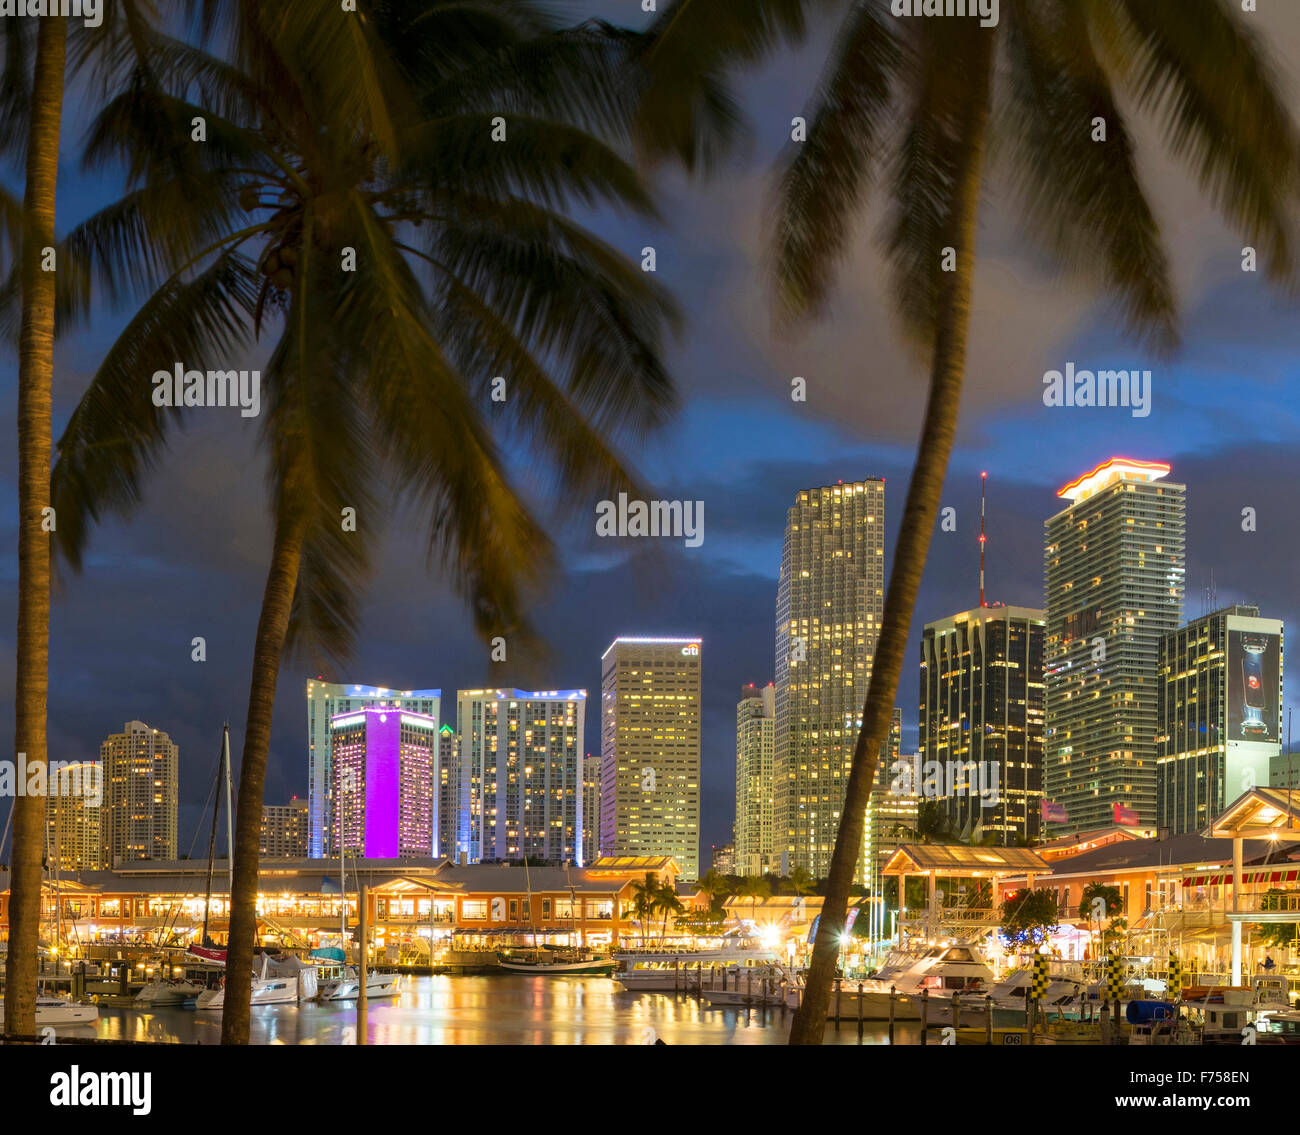 Ville de Miami vue sur marina, Florida, USA Banque D'Images